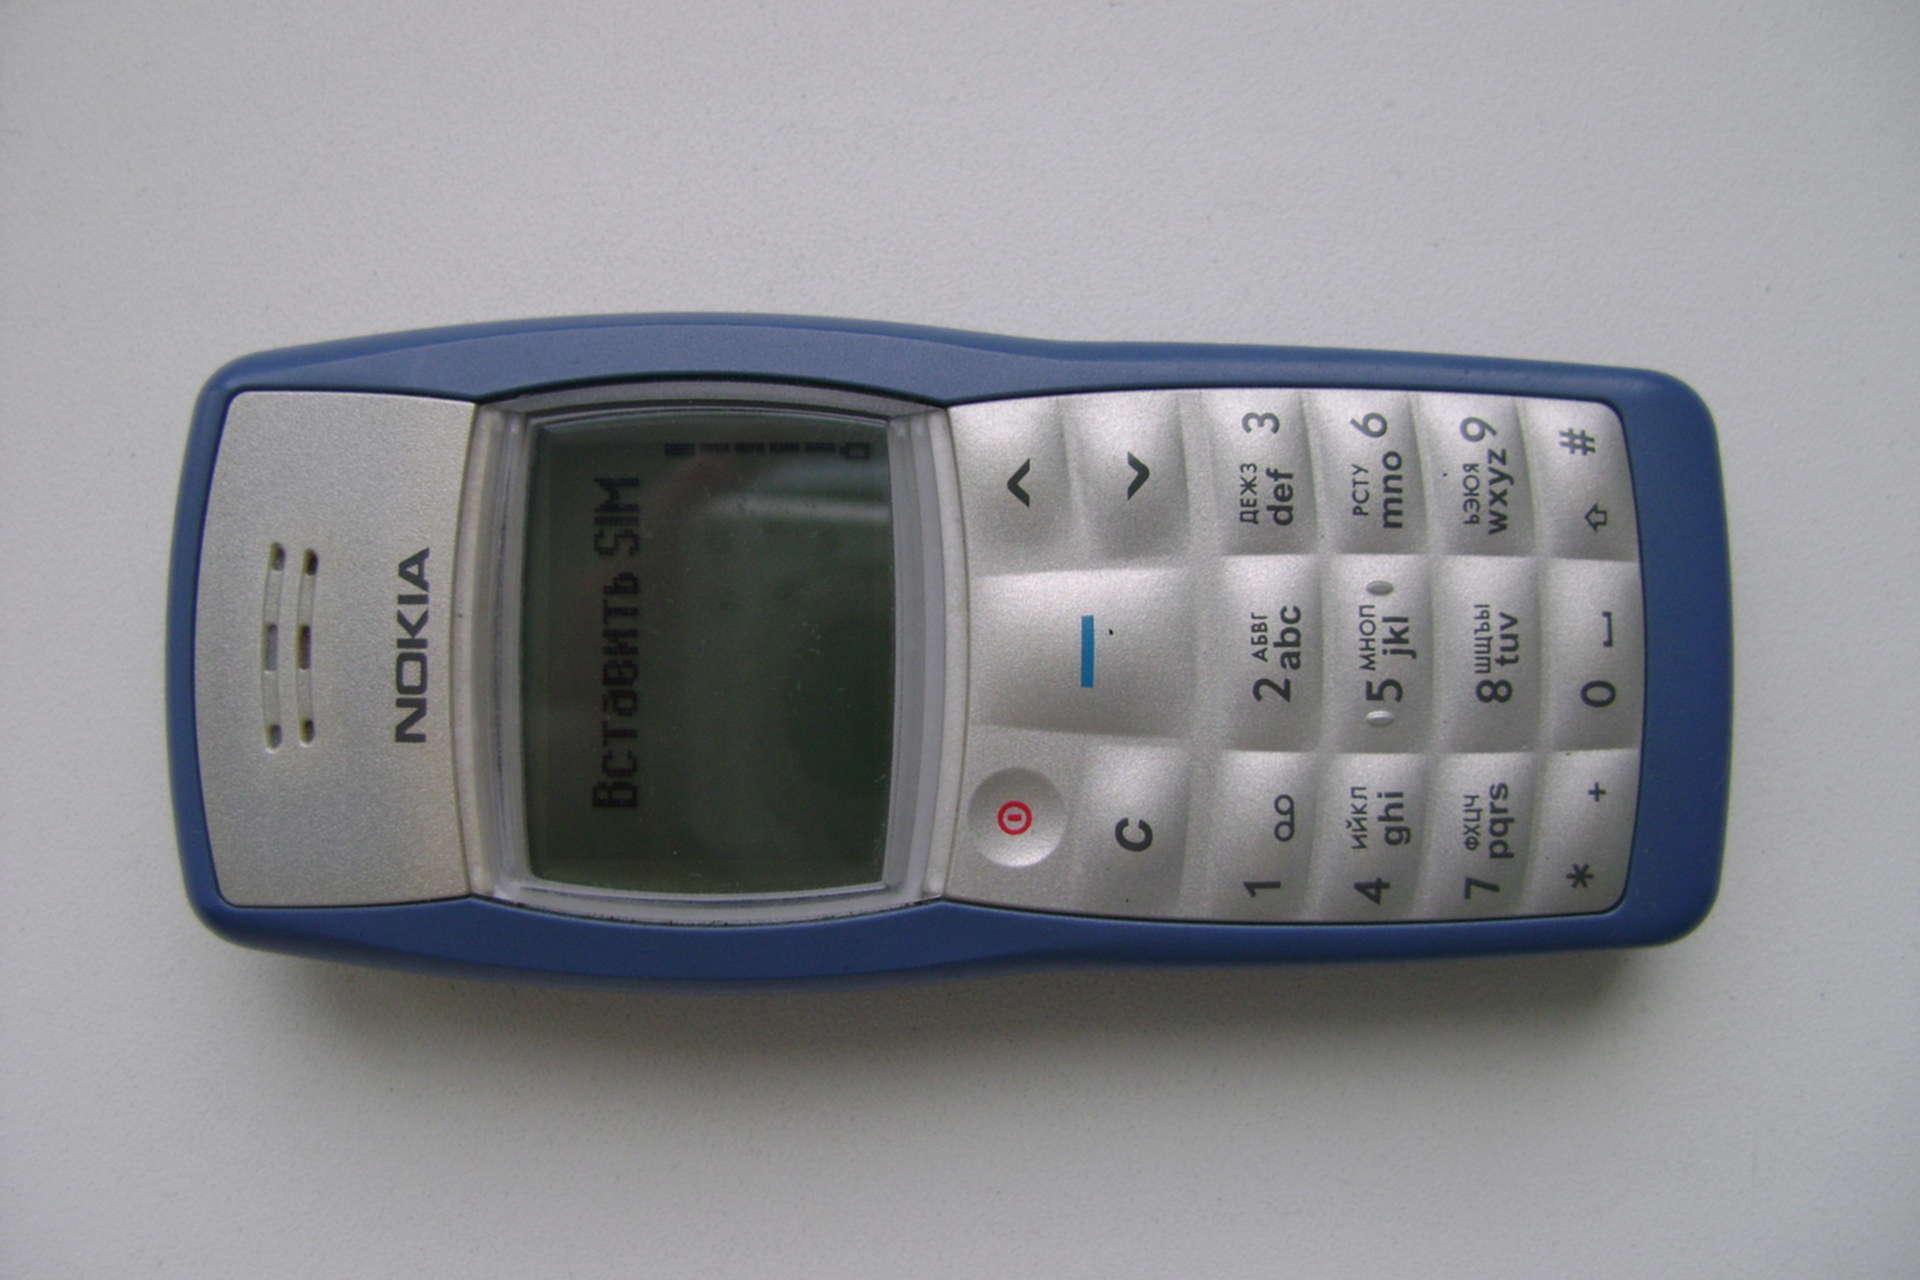 Фото старого нокиа. Nokia 1100 старый. Нокиа кнопочный 1100. Нокиа 1100 финская. Телефон нокиа кнопочный старые модели 1100.